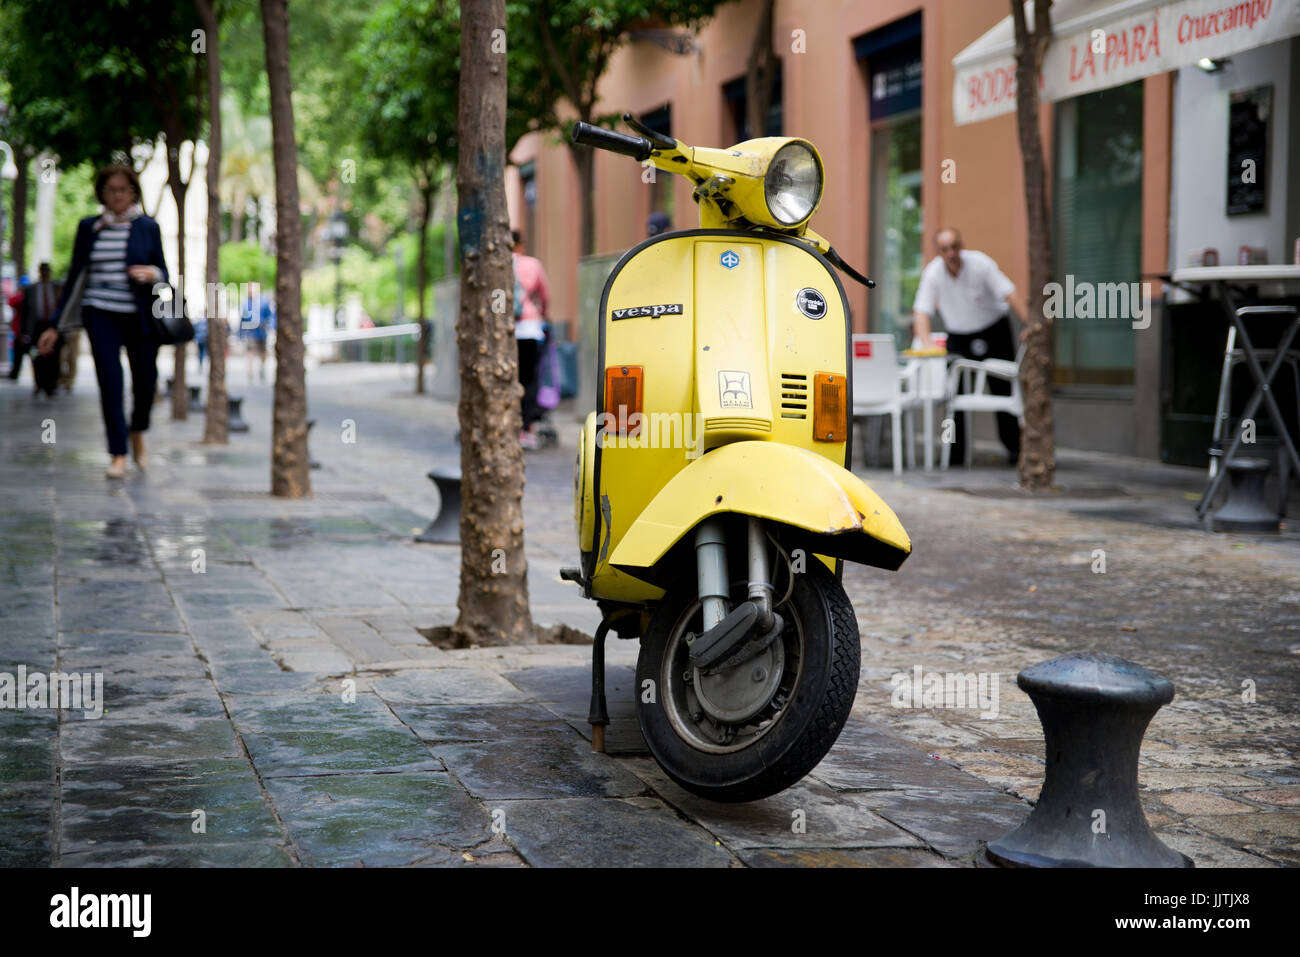 Scena di strada con giallo vintage scooter Vespa, siviglia spagna Foto Stock